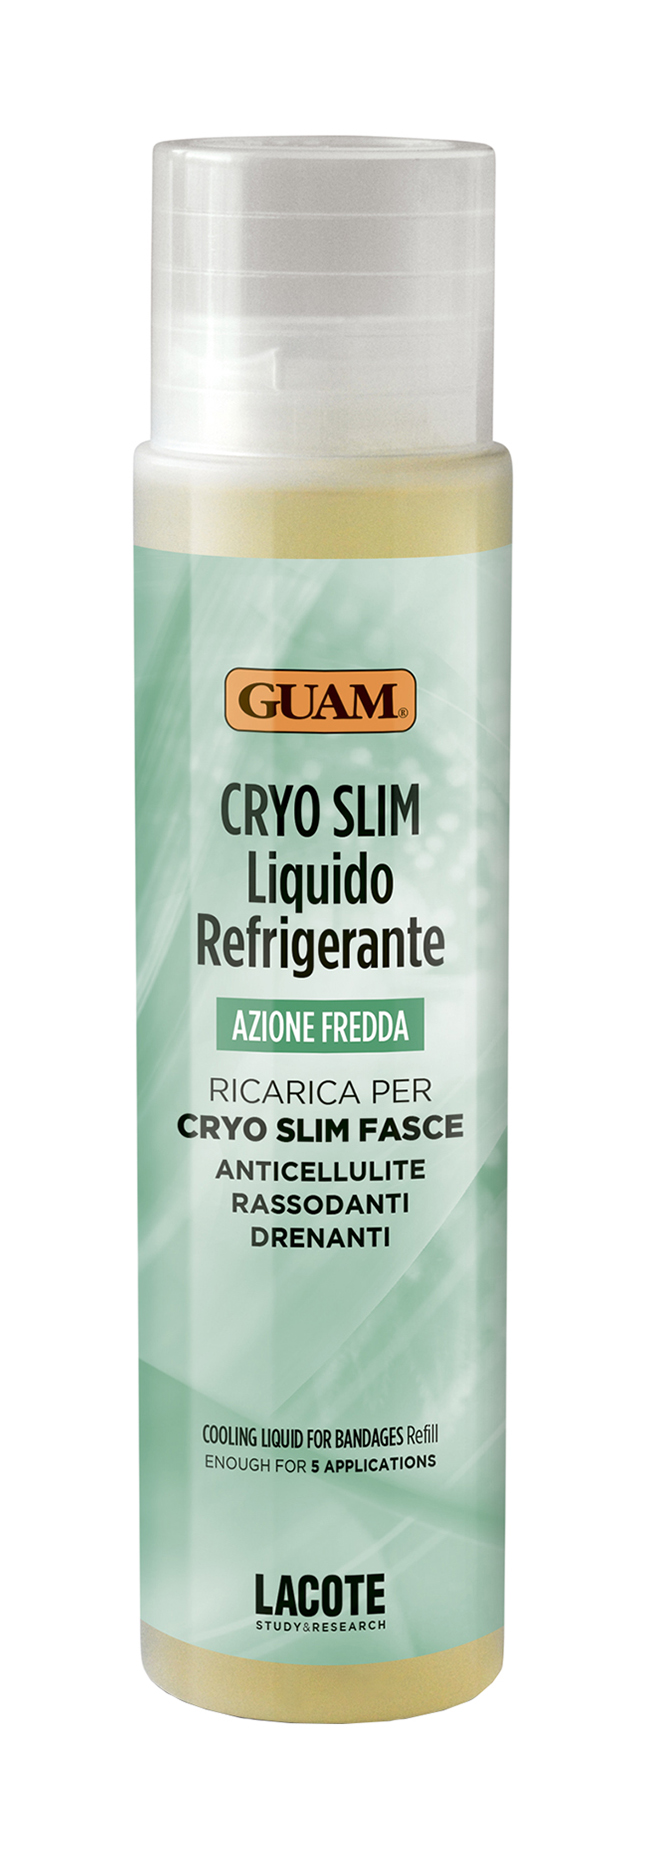 Жидкость для проведения процедуры бинтования Guam Azione Fredda Cryo Slim Fasce 250мл жидкость универсальная для биотуалетов и выгребных ям девон н концентрат 0 25 л